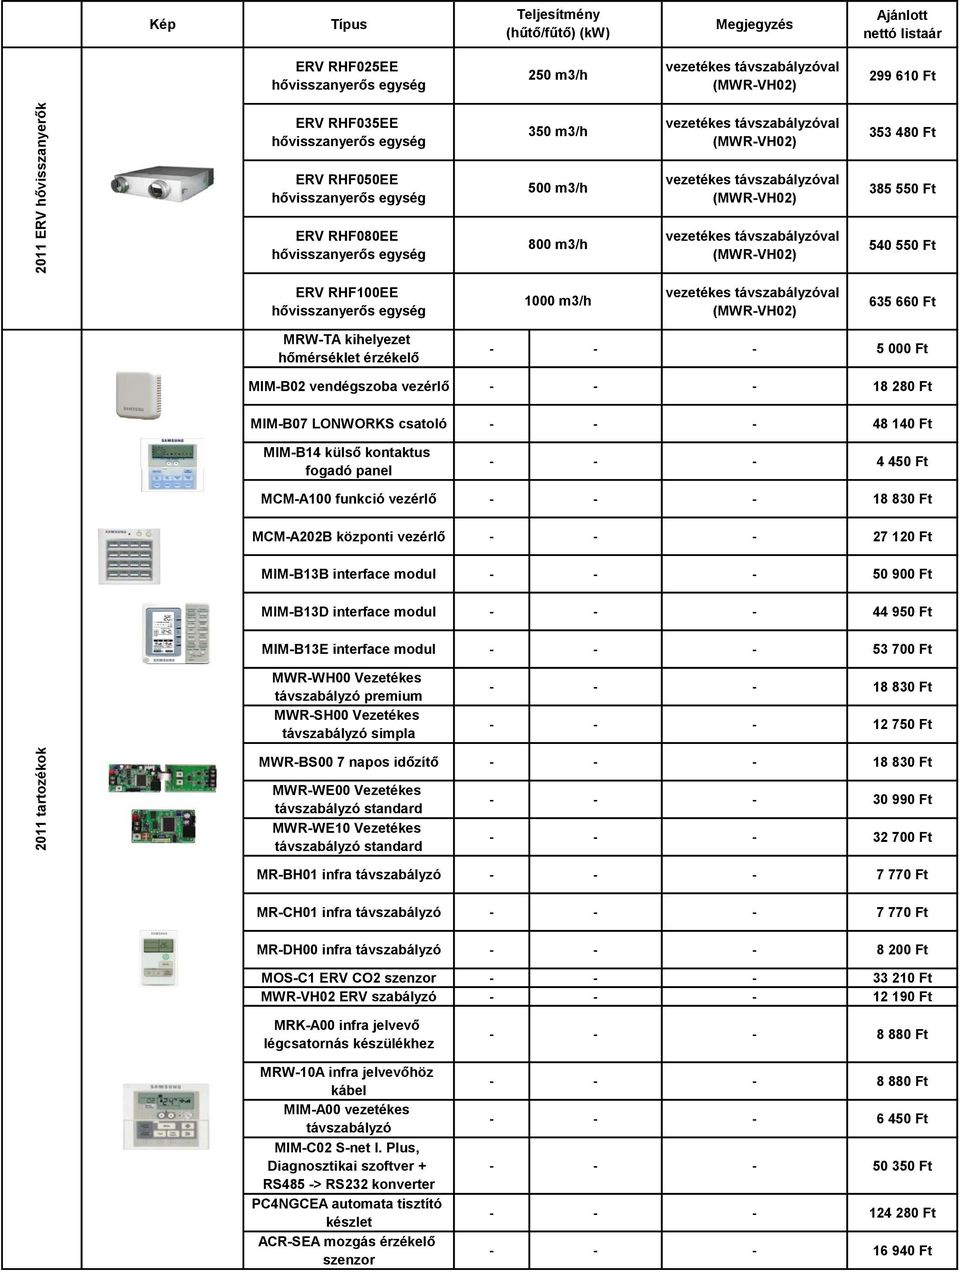 kontaktus fogadó panel - - - 4 450 Ft MCM-A100 funkció vezérlő - - - 18 830 Ft MCM-A202B központi vezérlő - - - 27 120 Ft MIM-B13B interface modul - - - 50 900 Ft MIM-B13D interface modul - - - 44